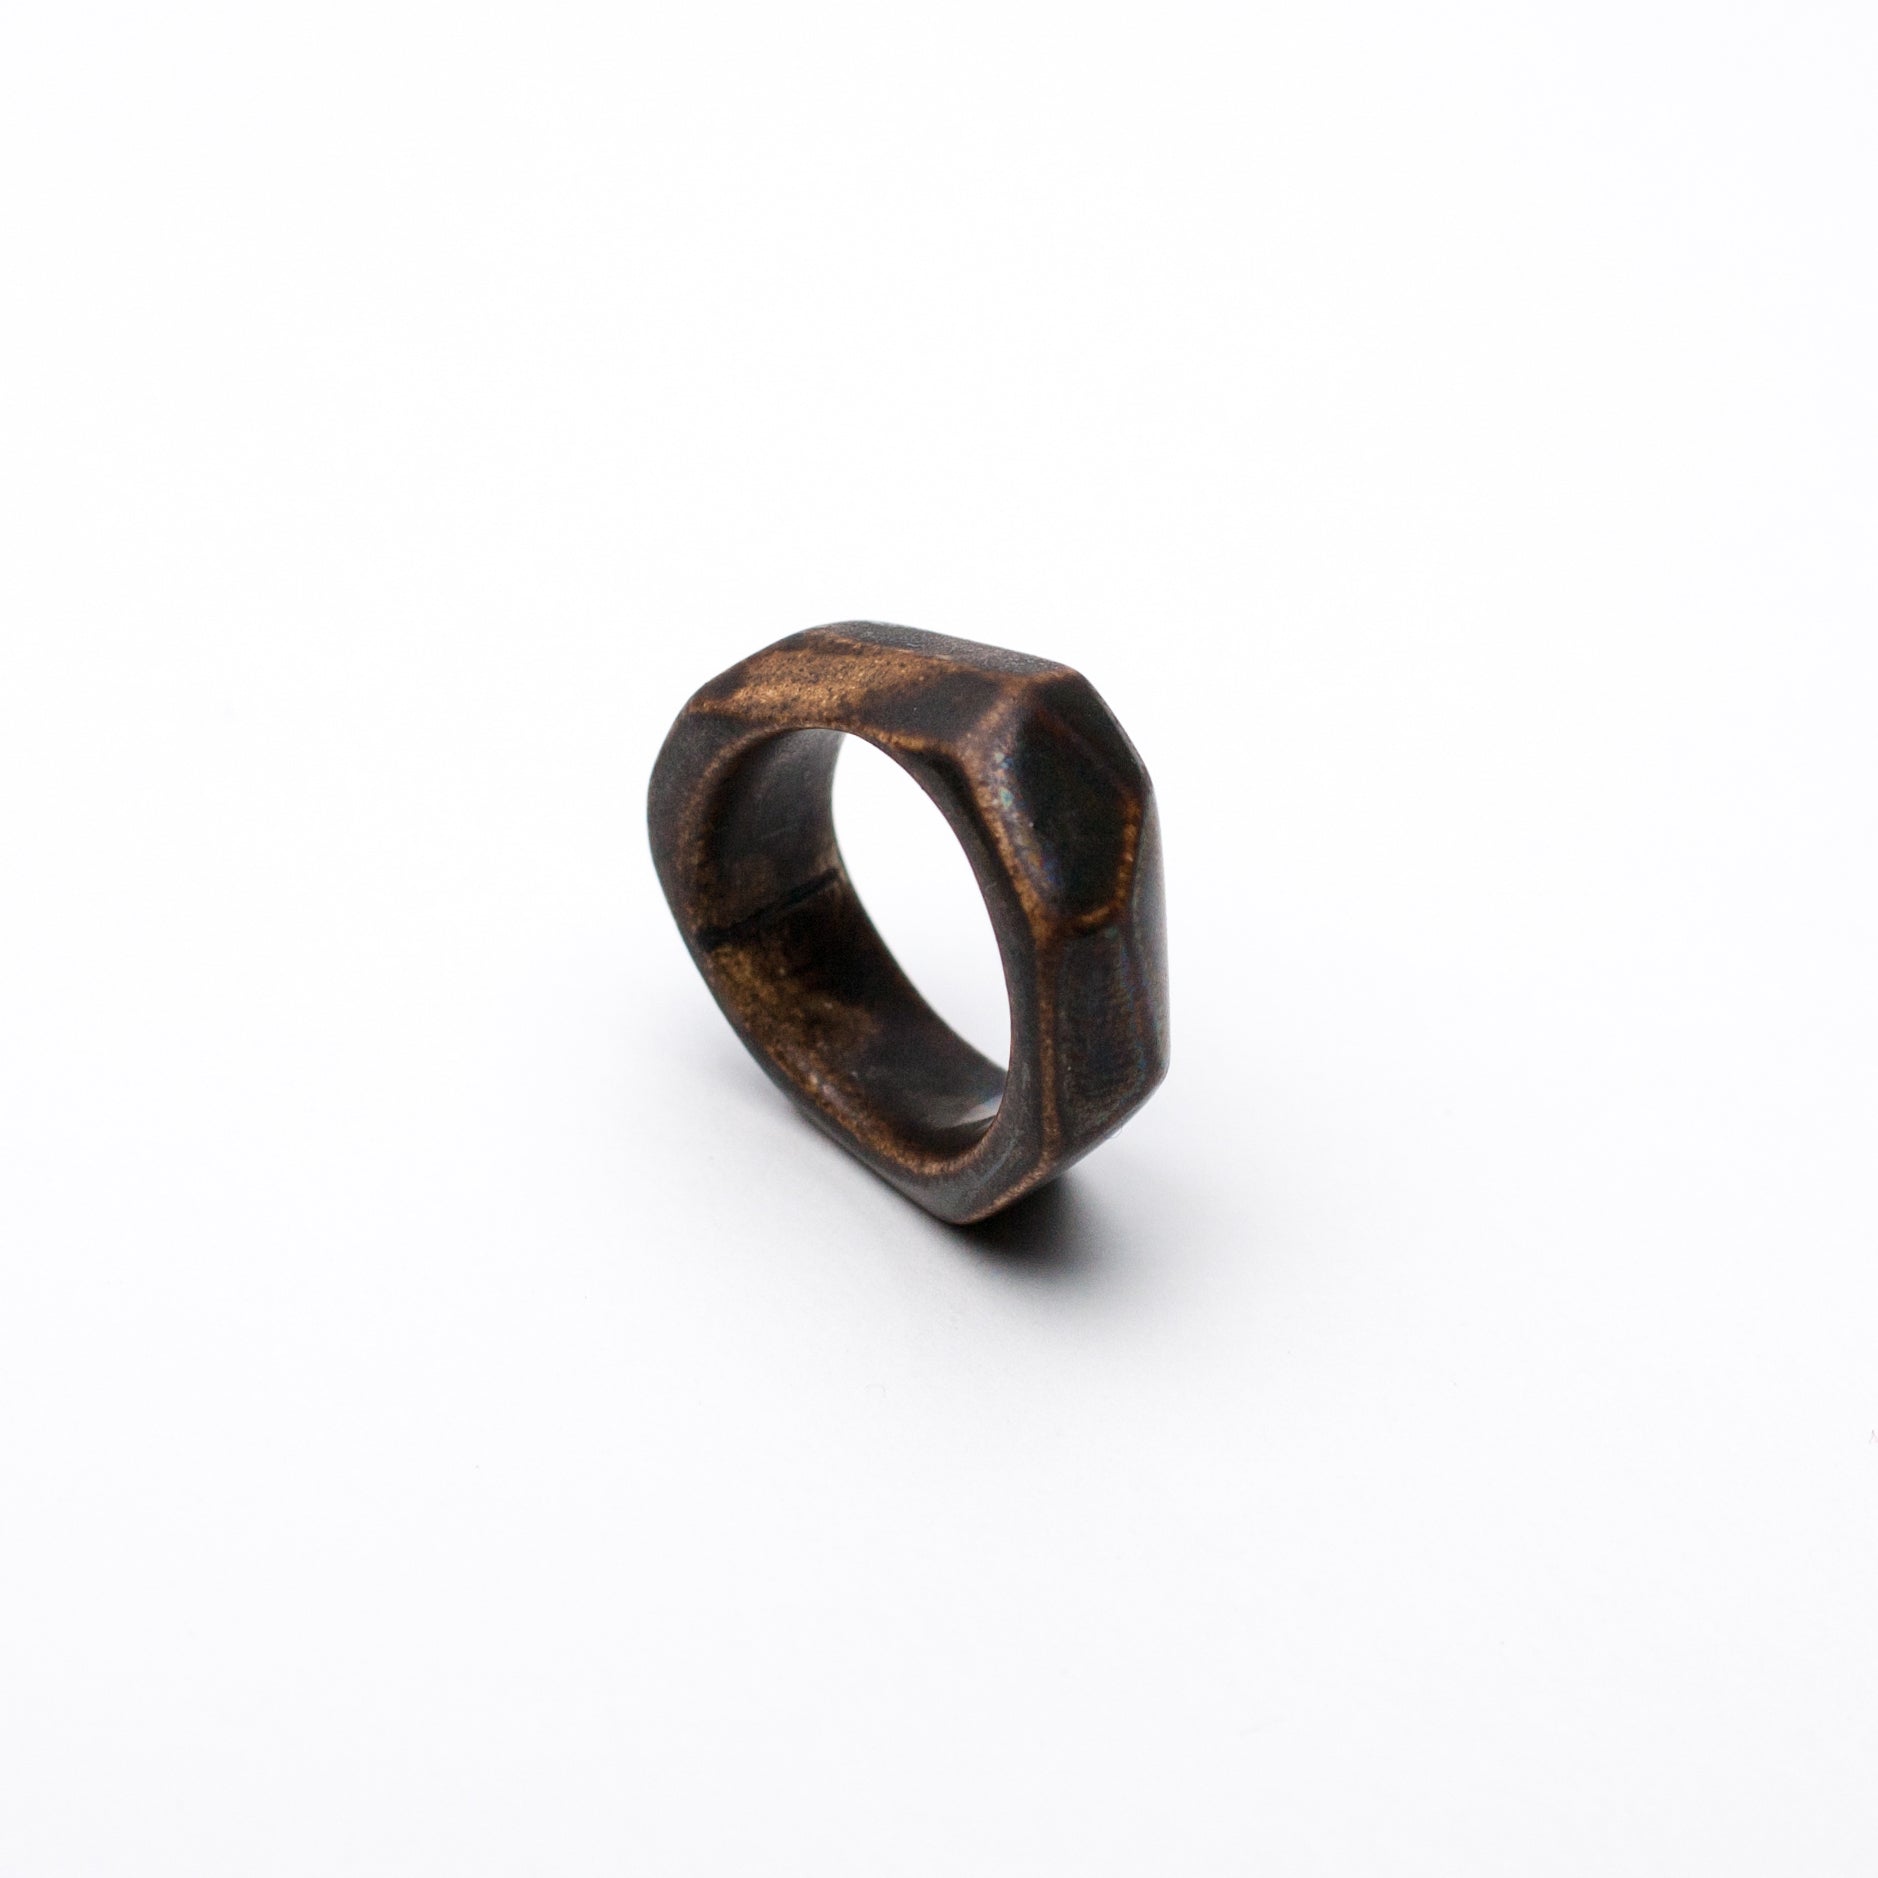 15.5 size ceramic ring Arke